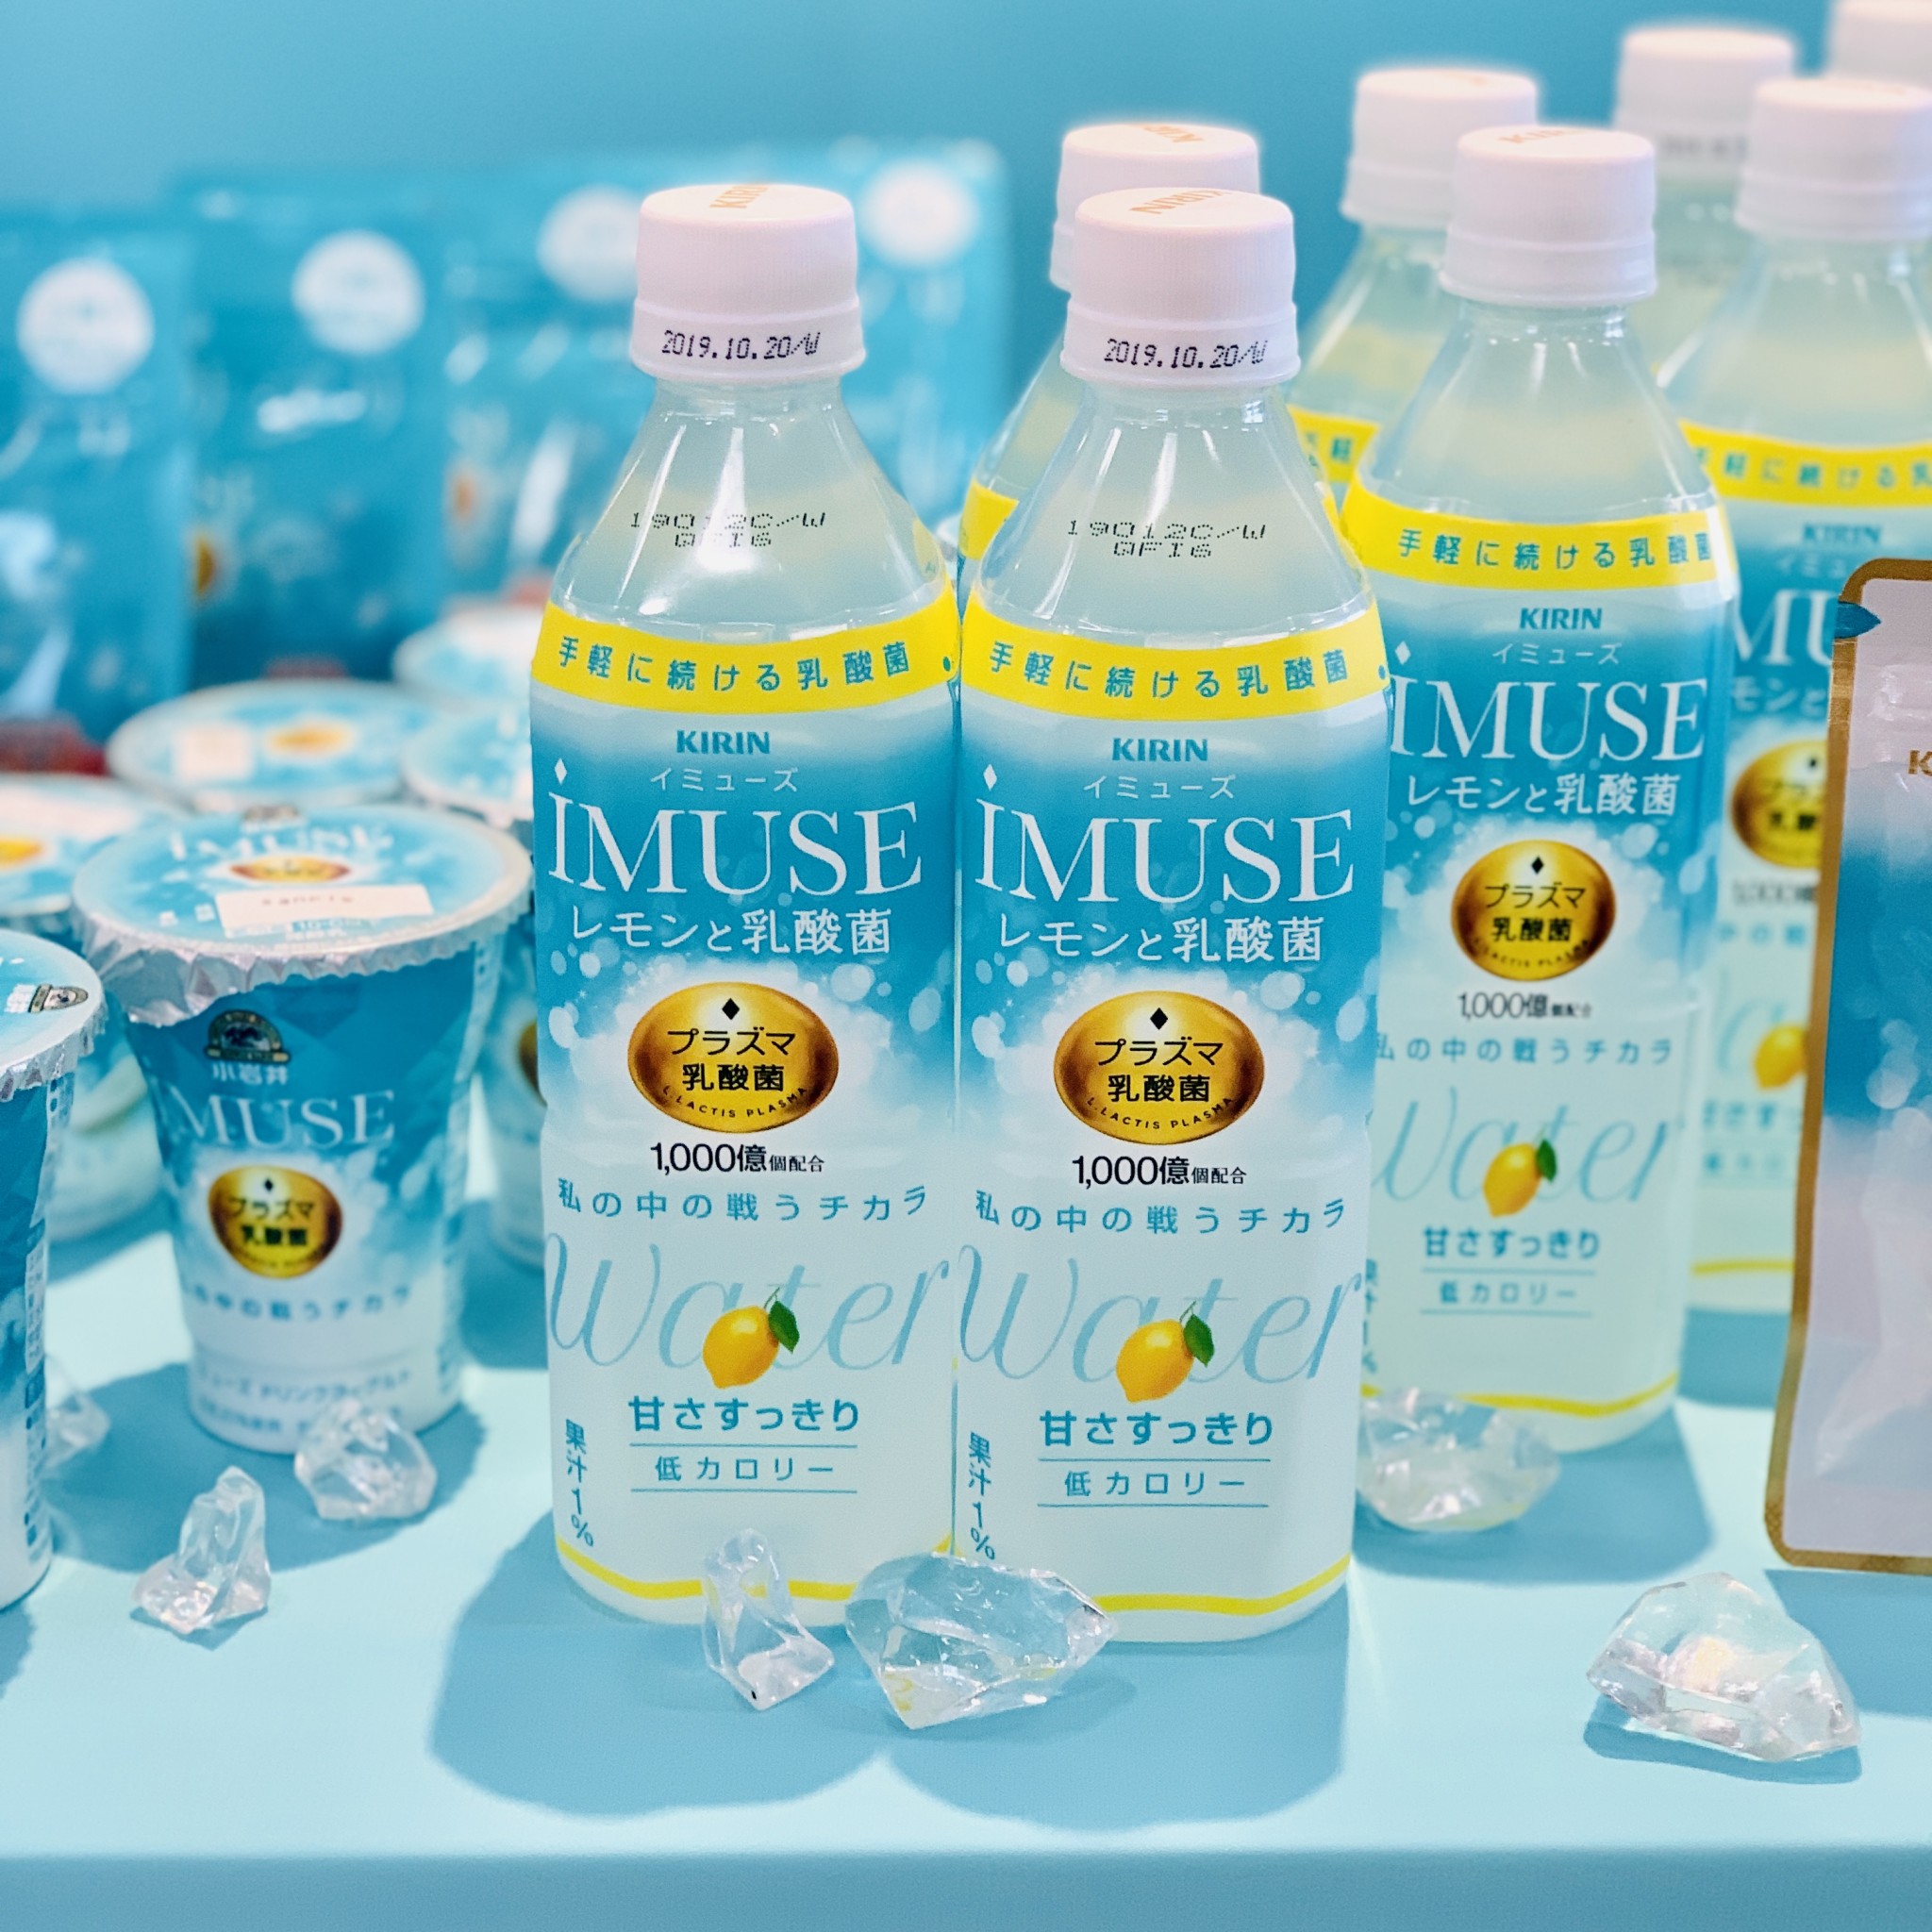 大人気商品のキリン 「iMUSE レモンと乳酸菌」。